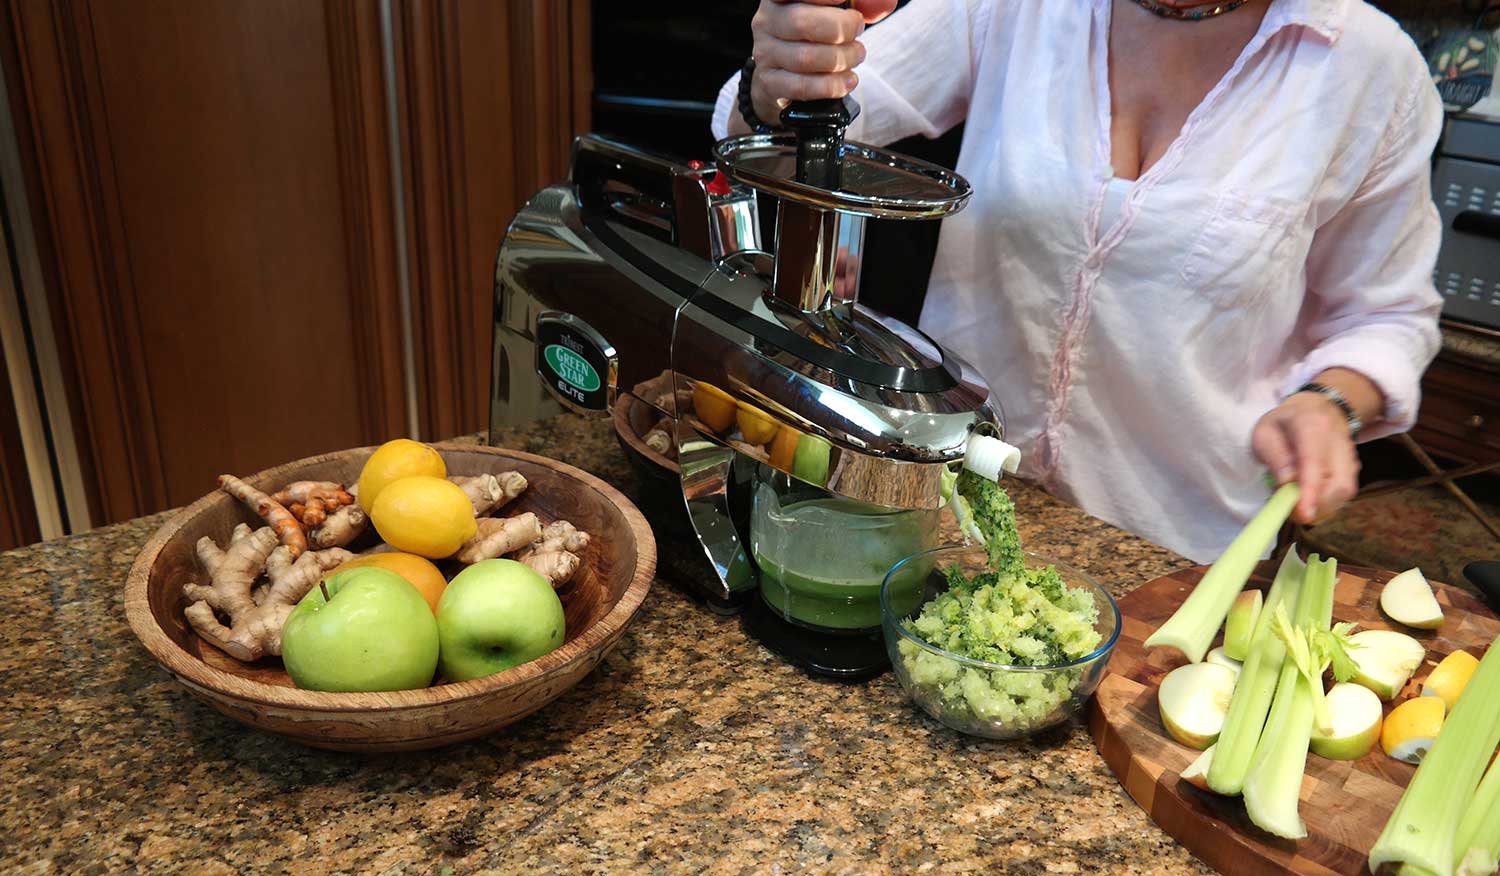 Celery Juice by Chef Olga Keller